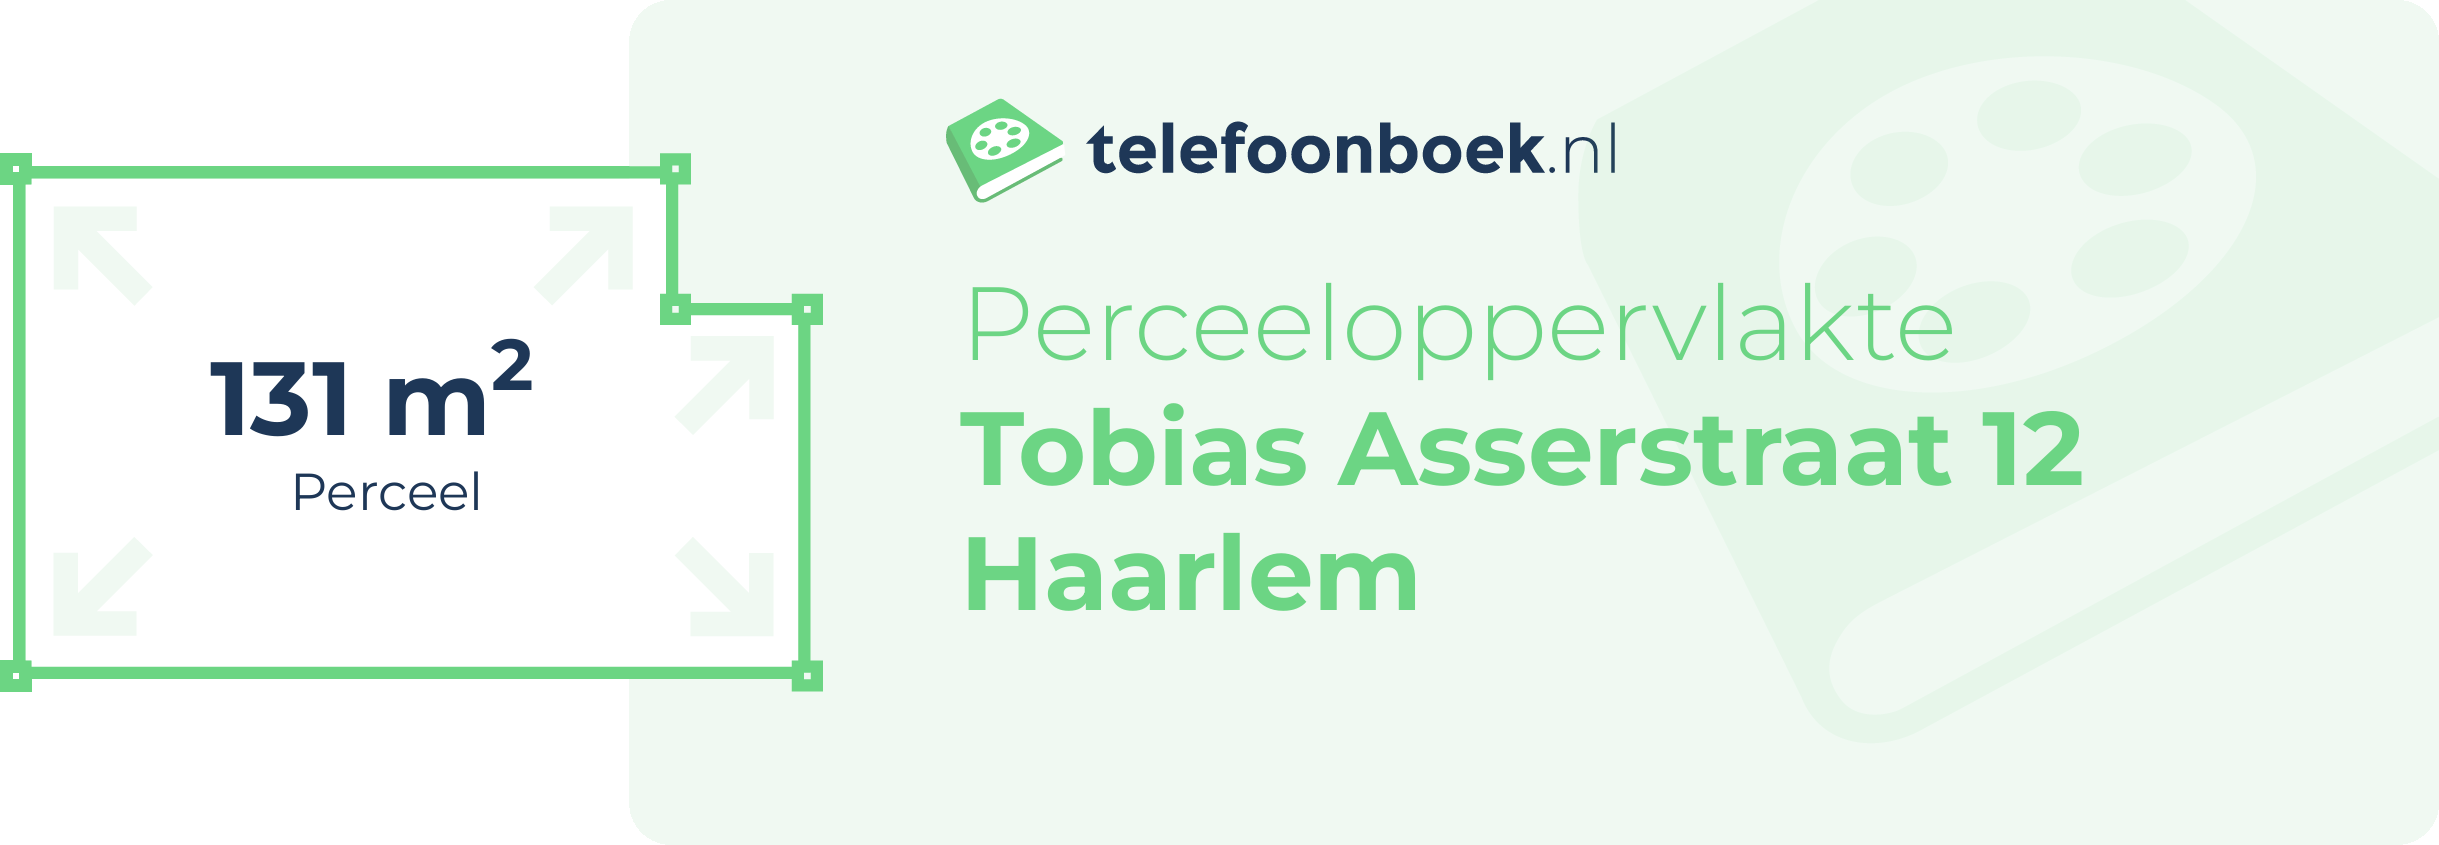 Perceeloppervlakte Tobias Asserstraat 12 Haarlem